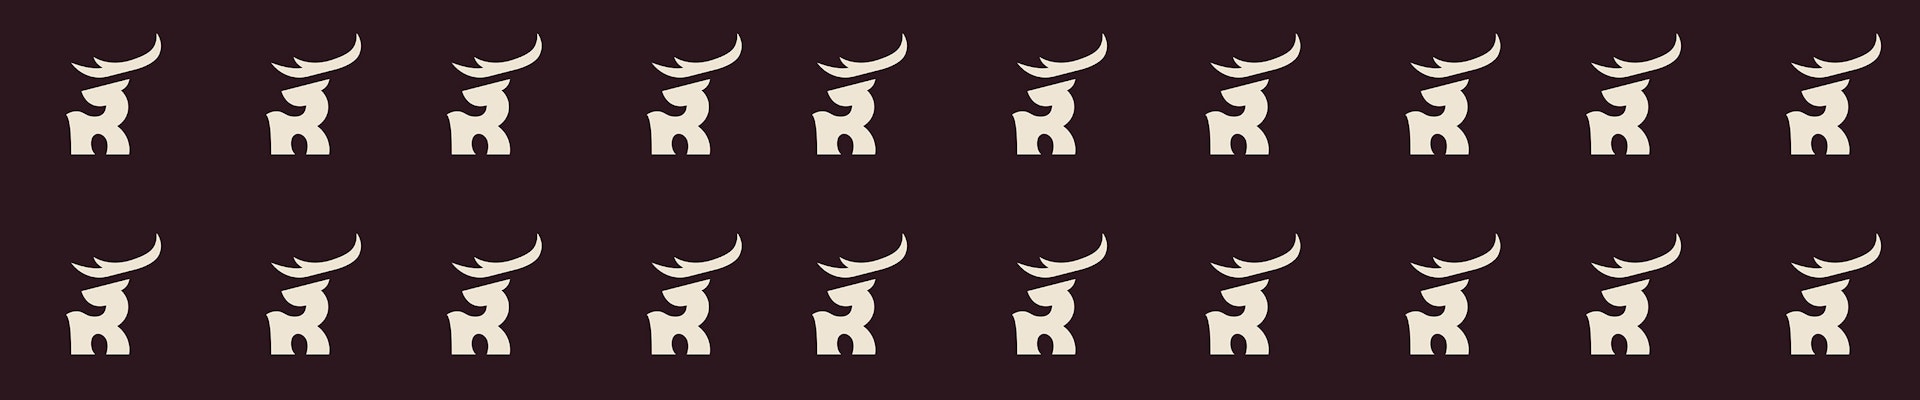 banner of Rendezvous Music Festival logos